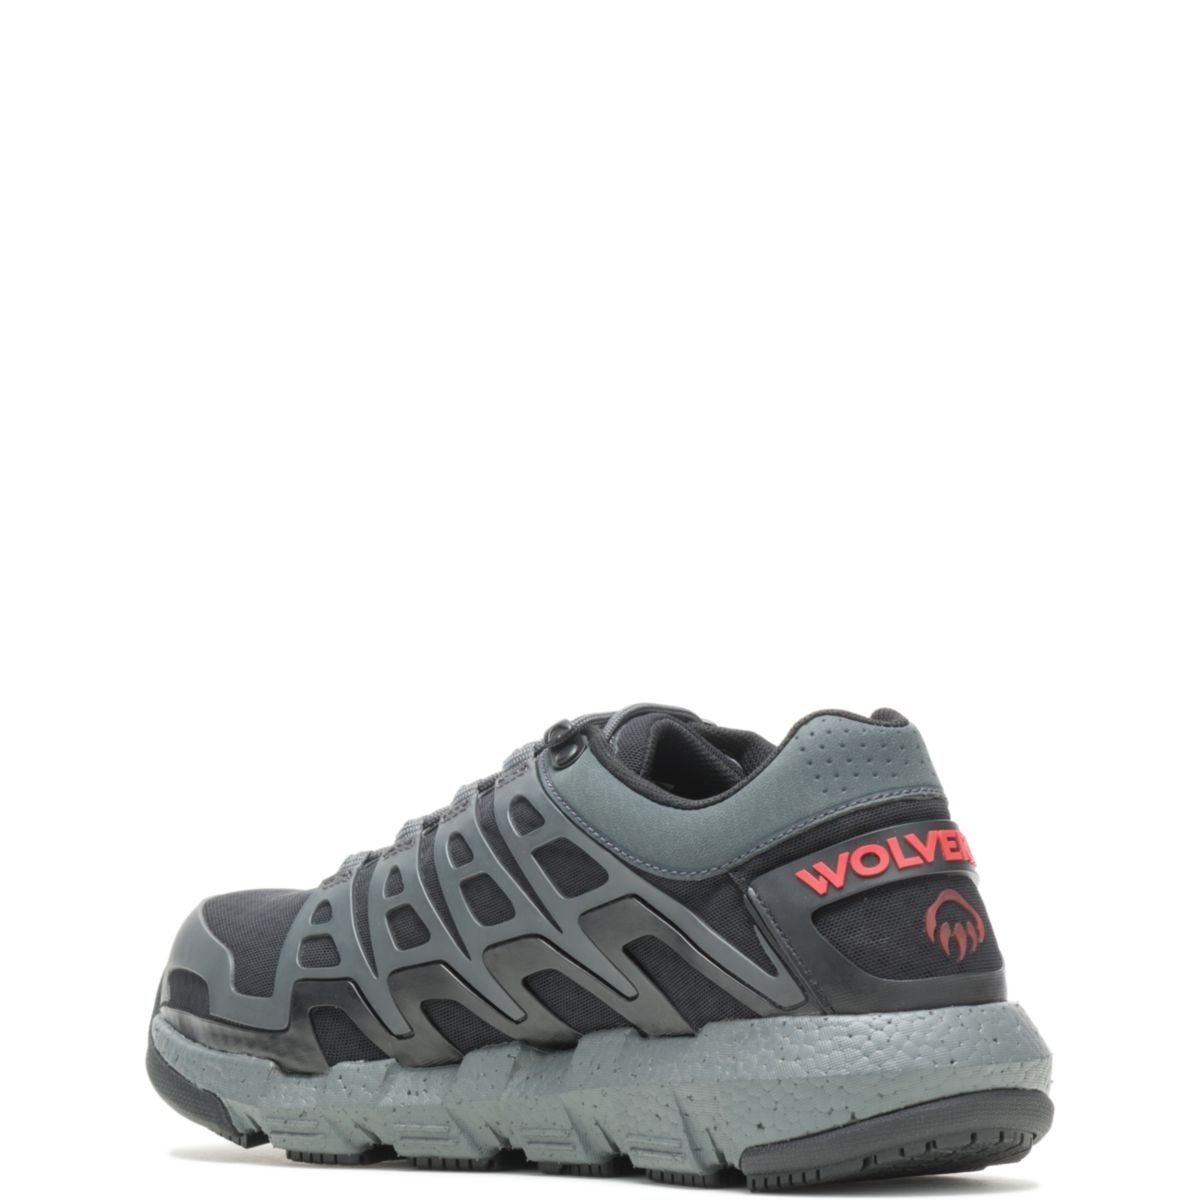 WOLVERINE Men's Rev Vent UltraSpringâ¢ DuraShocksÂ® CarbonMAXÂ® Composite Toe Work Shoe Charcoal - W211016 CHARCOAL - CHARCOAL, 12 X-Wide